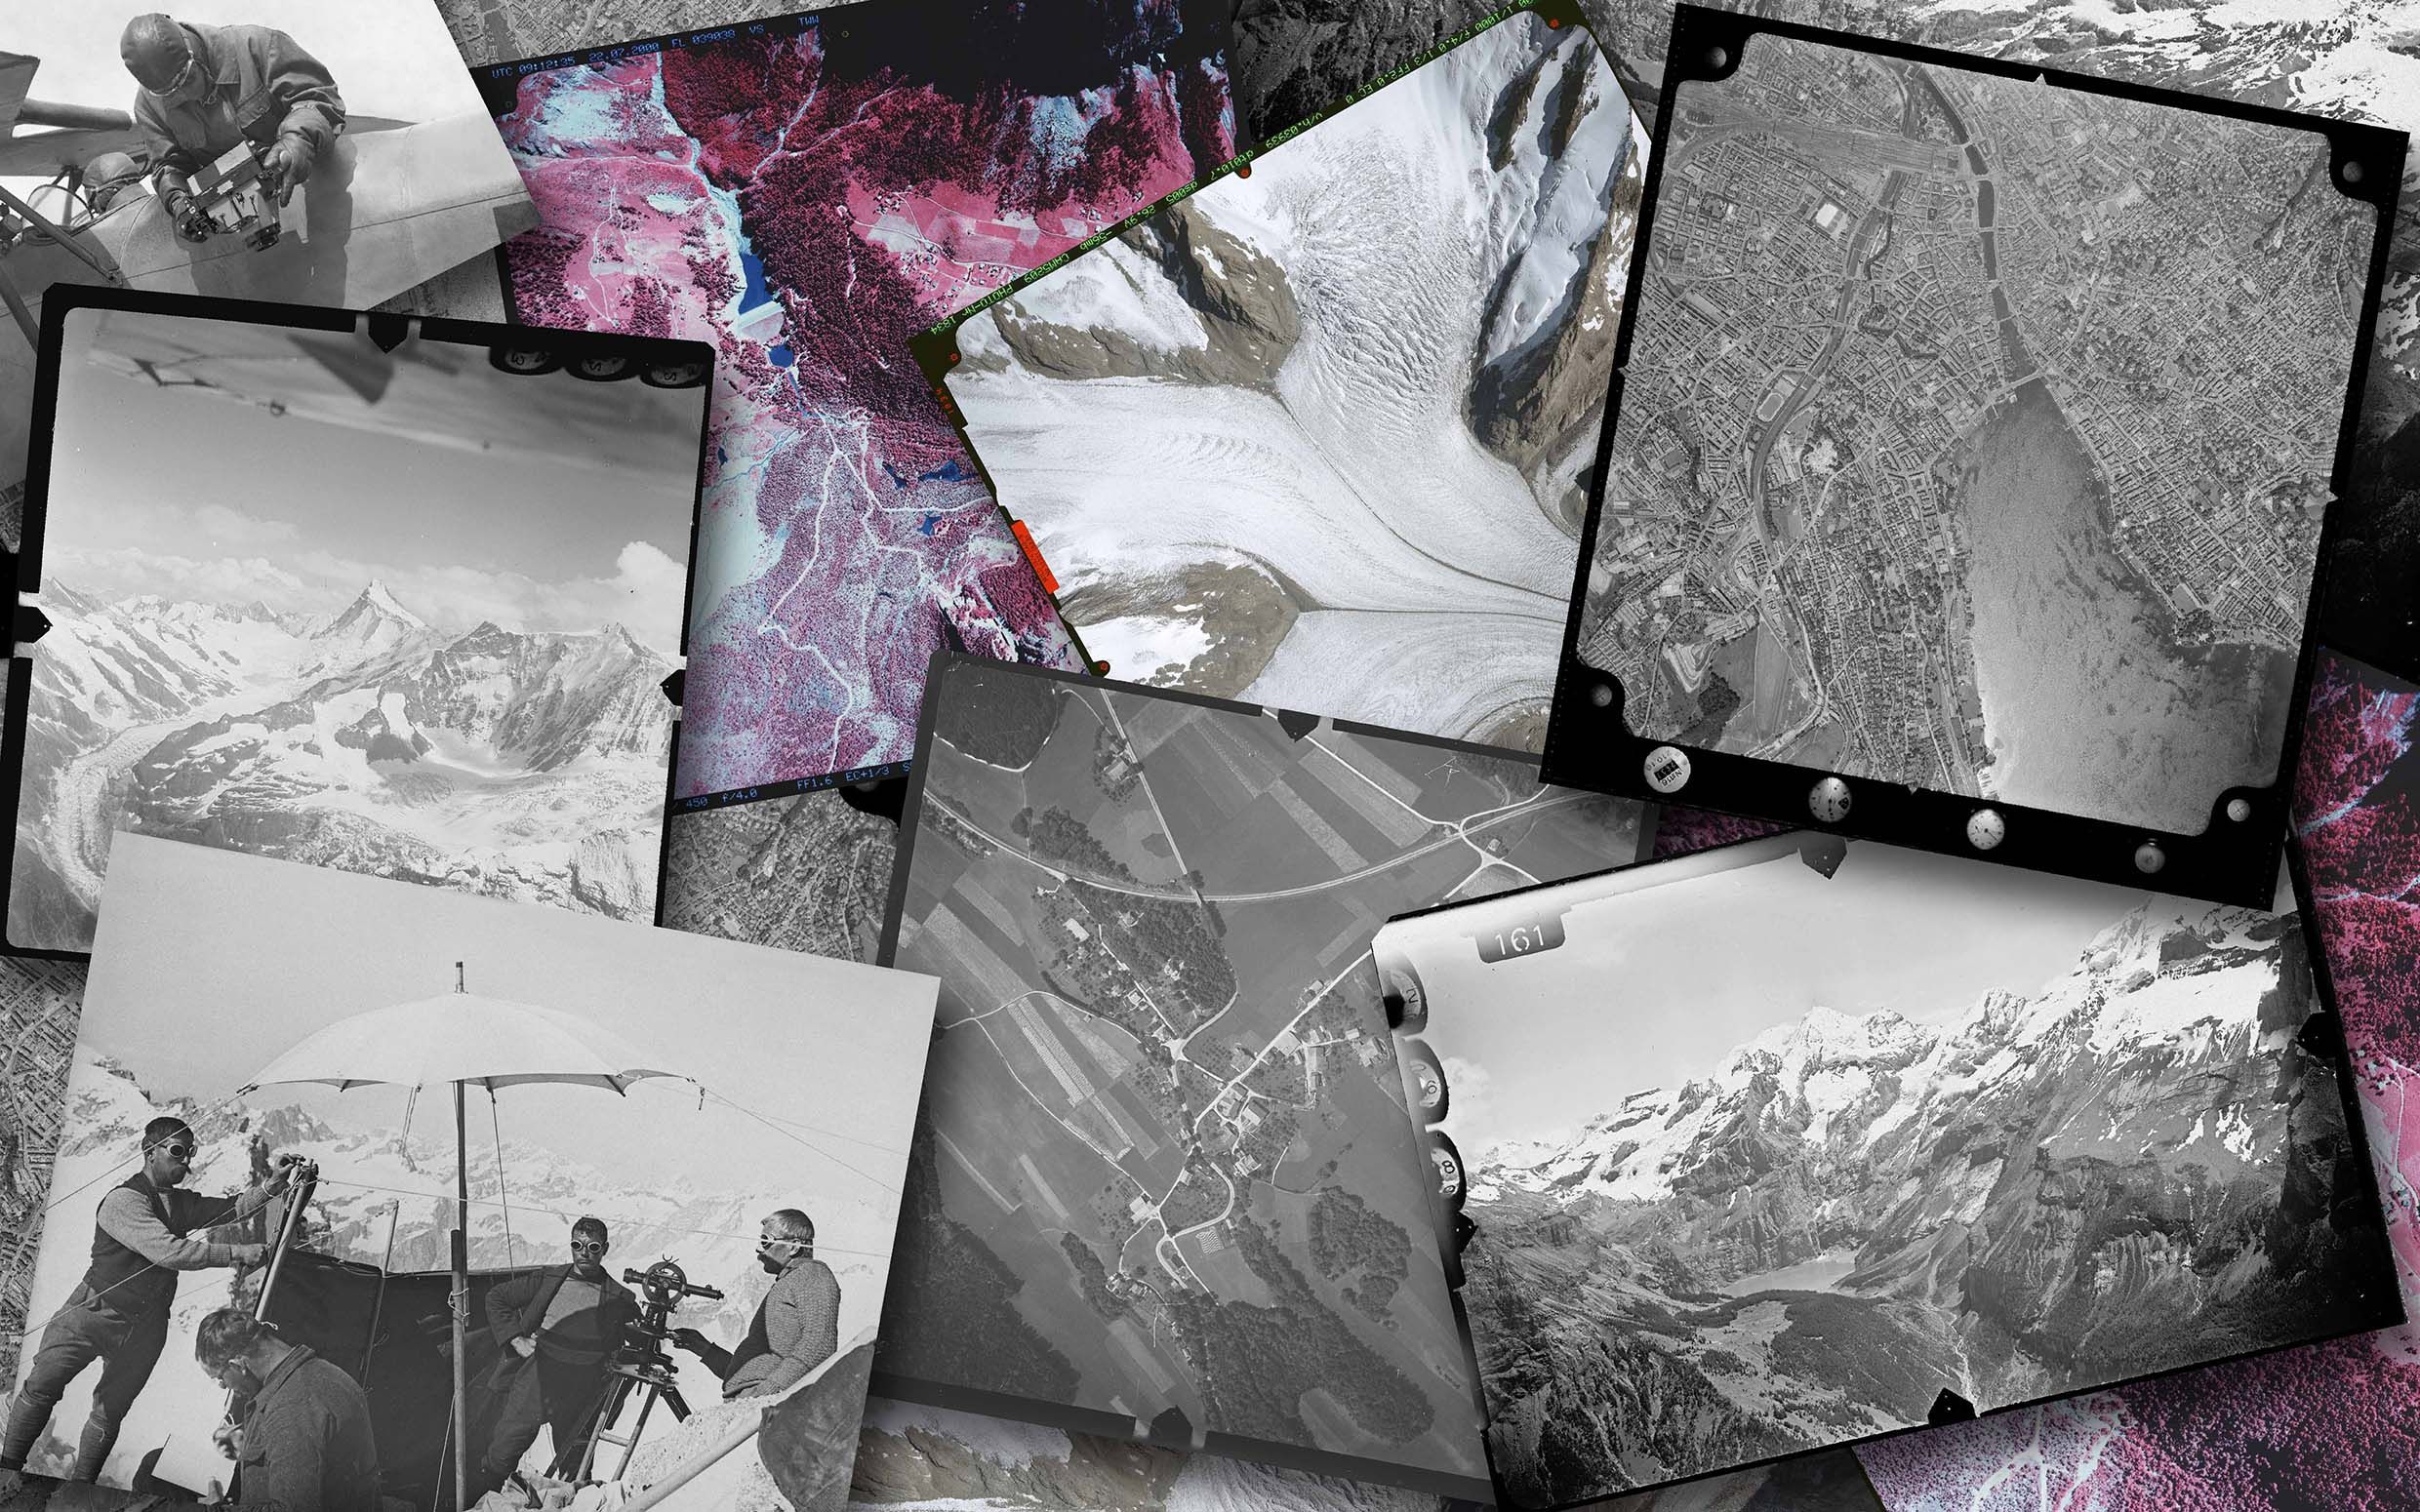 Esempi di fotografie aeree storiche e immagini terrestri della collezione di immagini swisstopo sotto forma di collage.